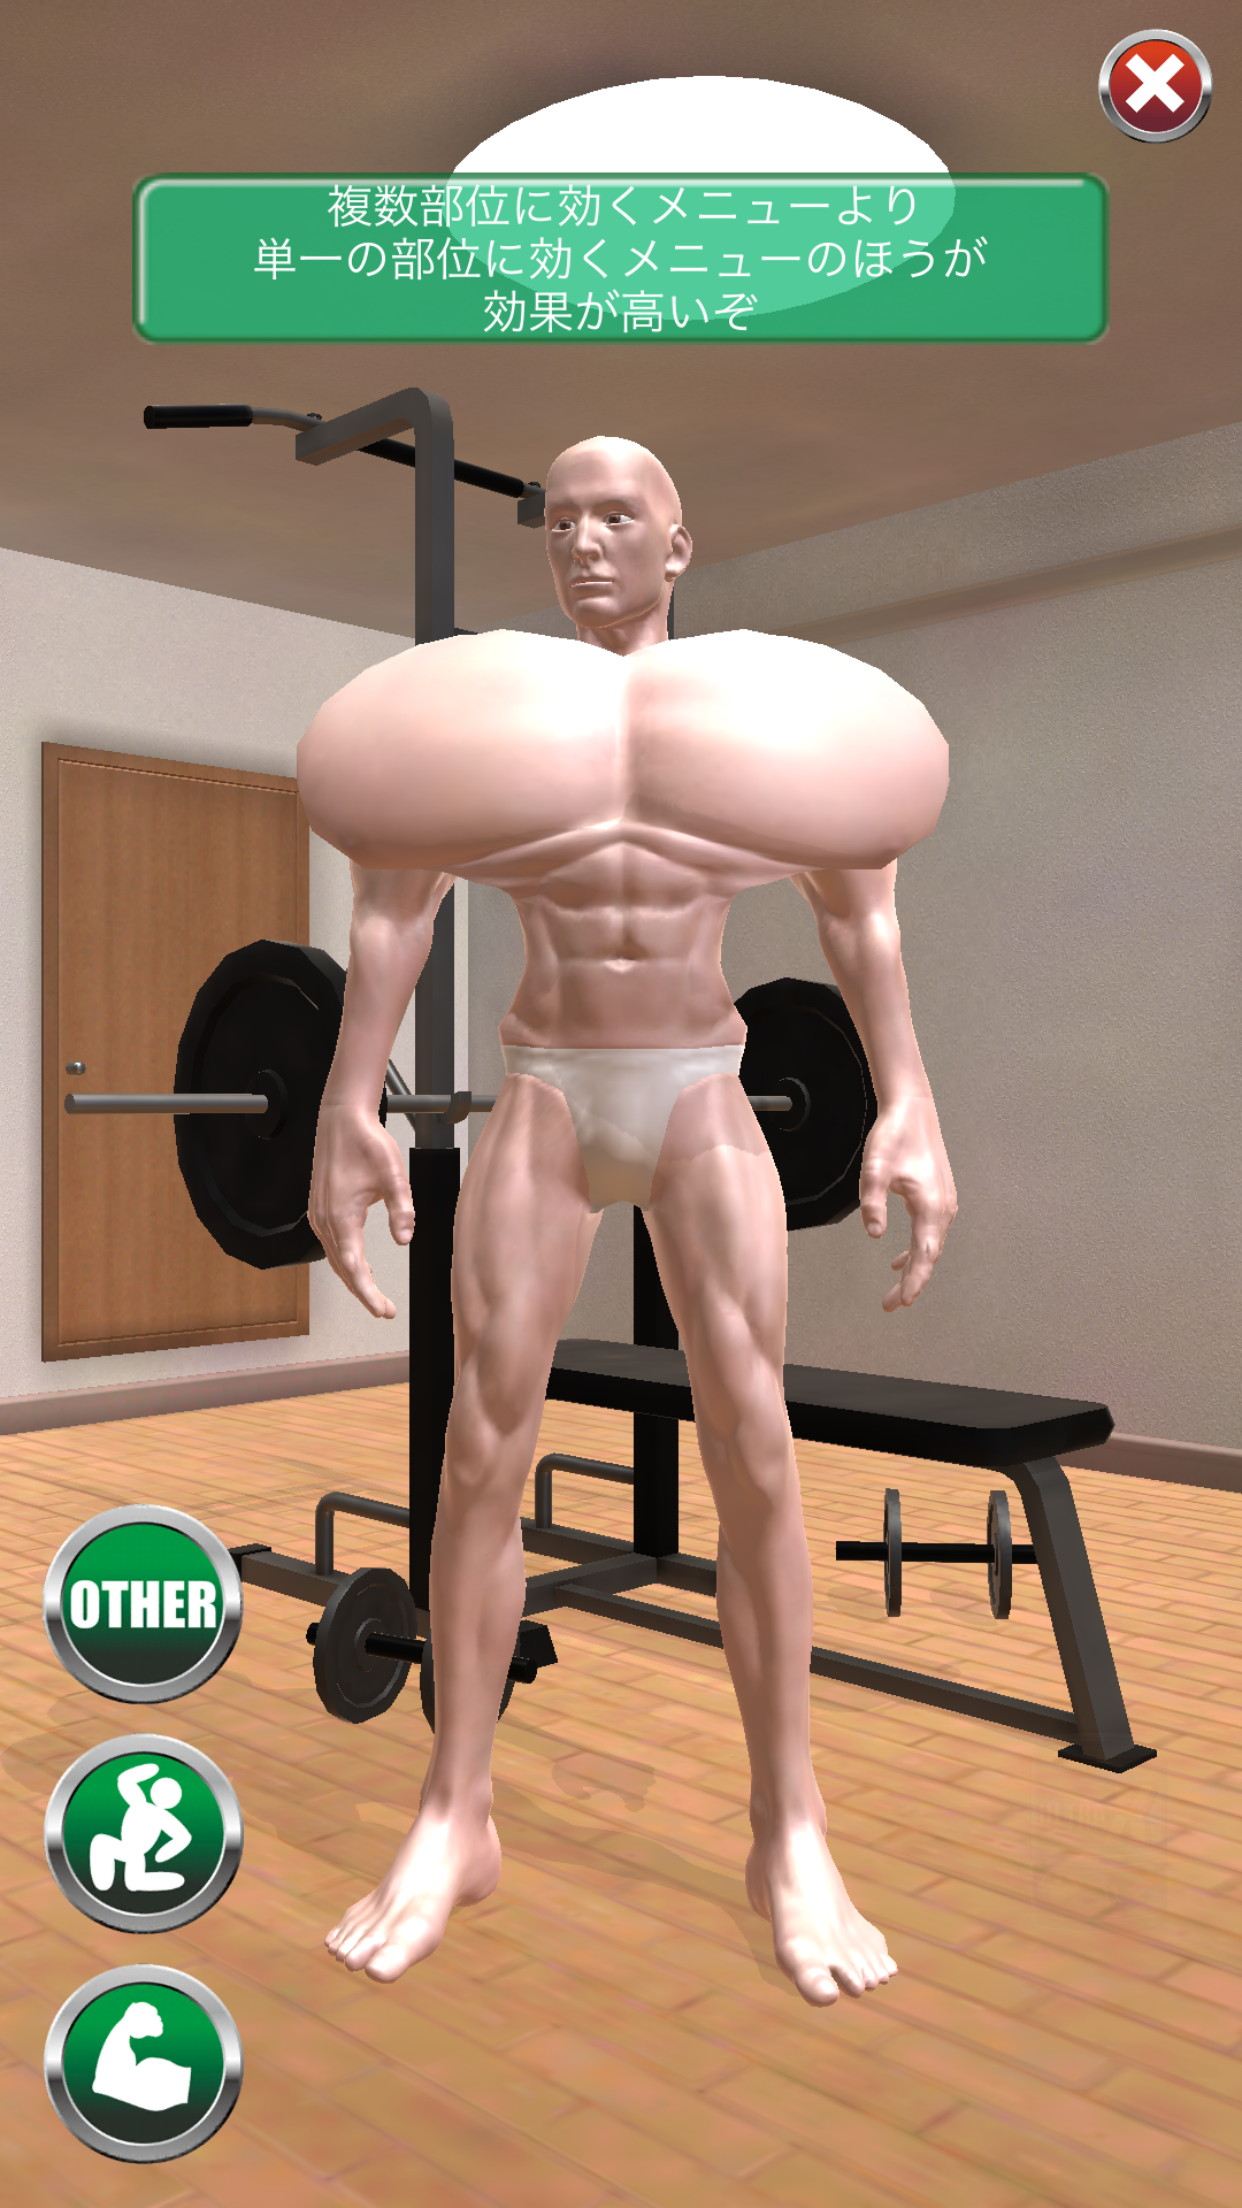 画像集 006 常識を越えた肉体改造がここにある 筋肉育成シミュレーション